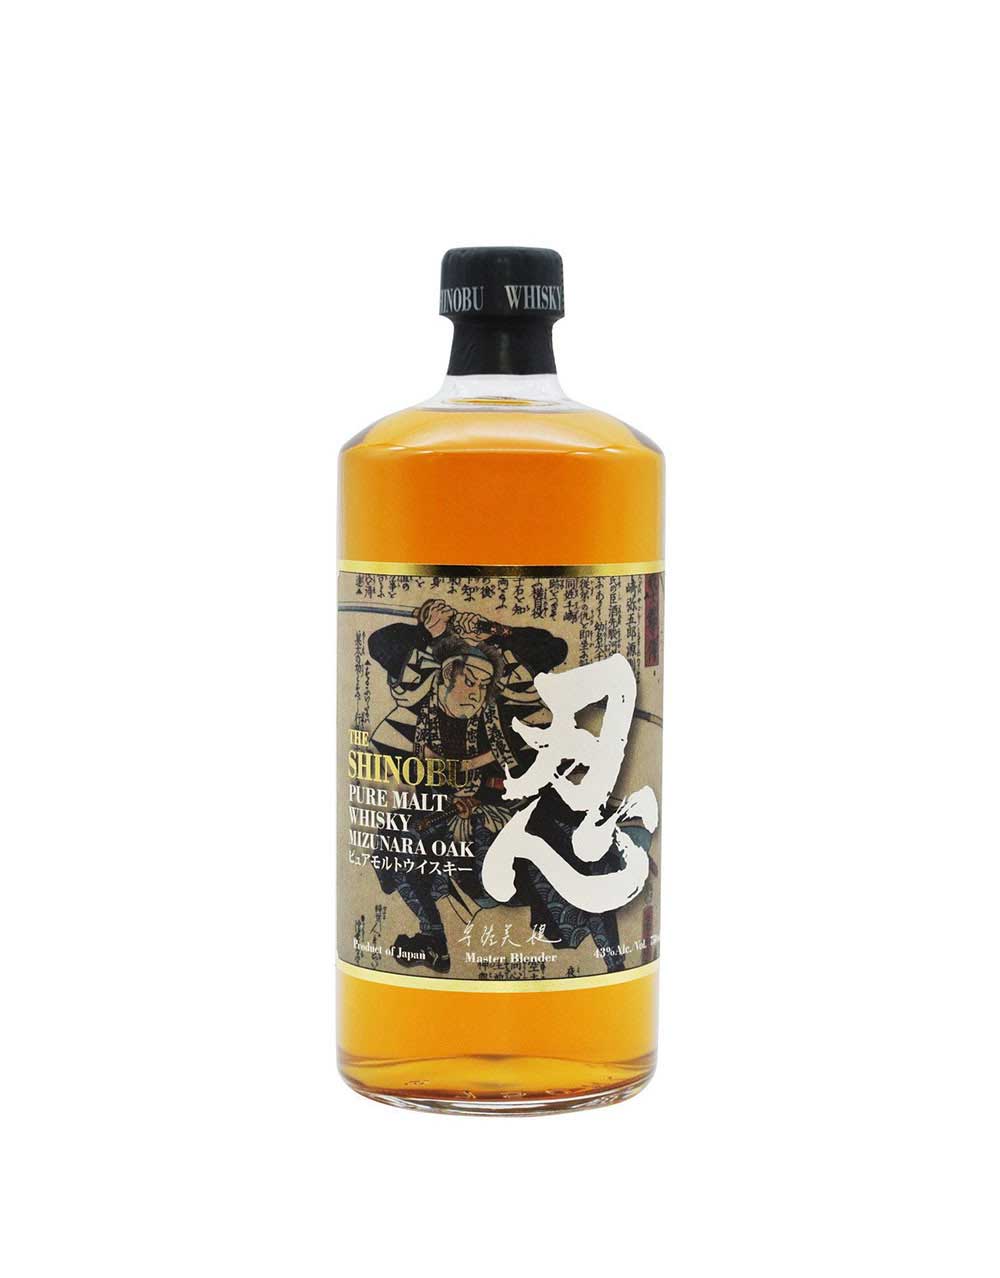 The Shinobu Pure Malt Whisky Mizunara Oak